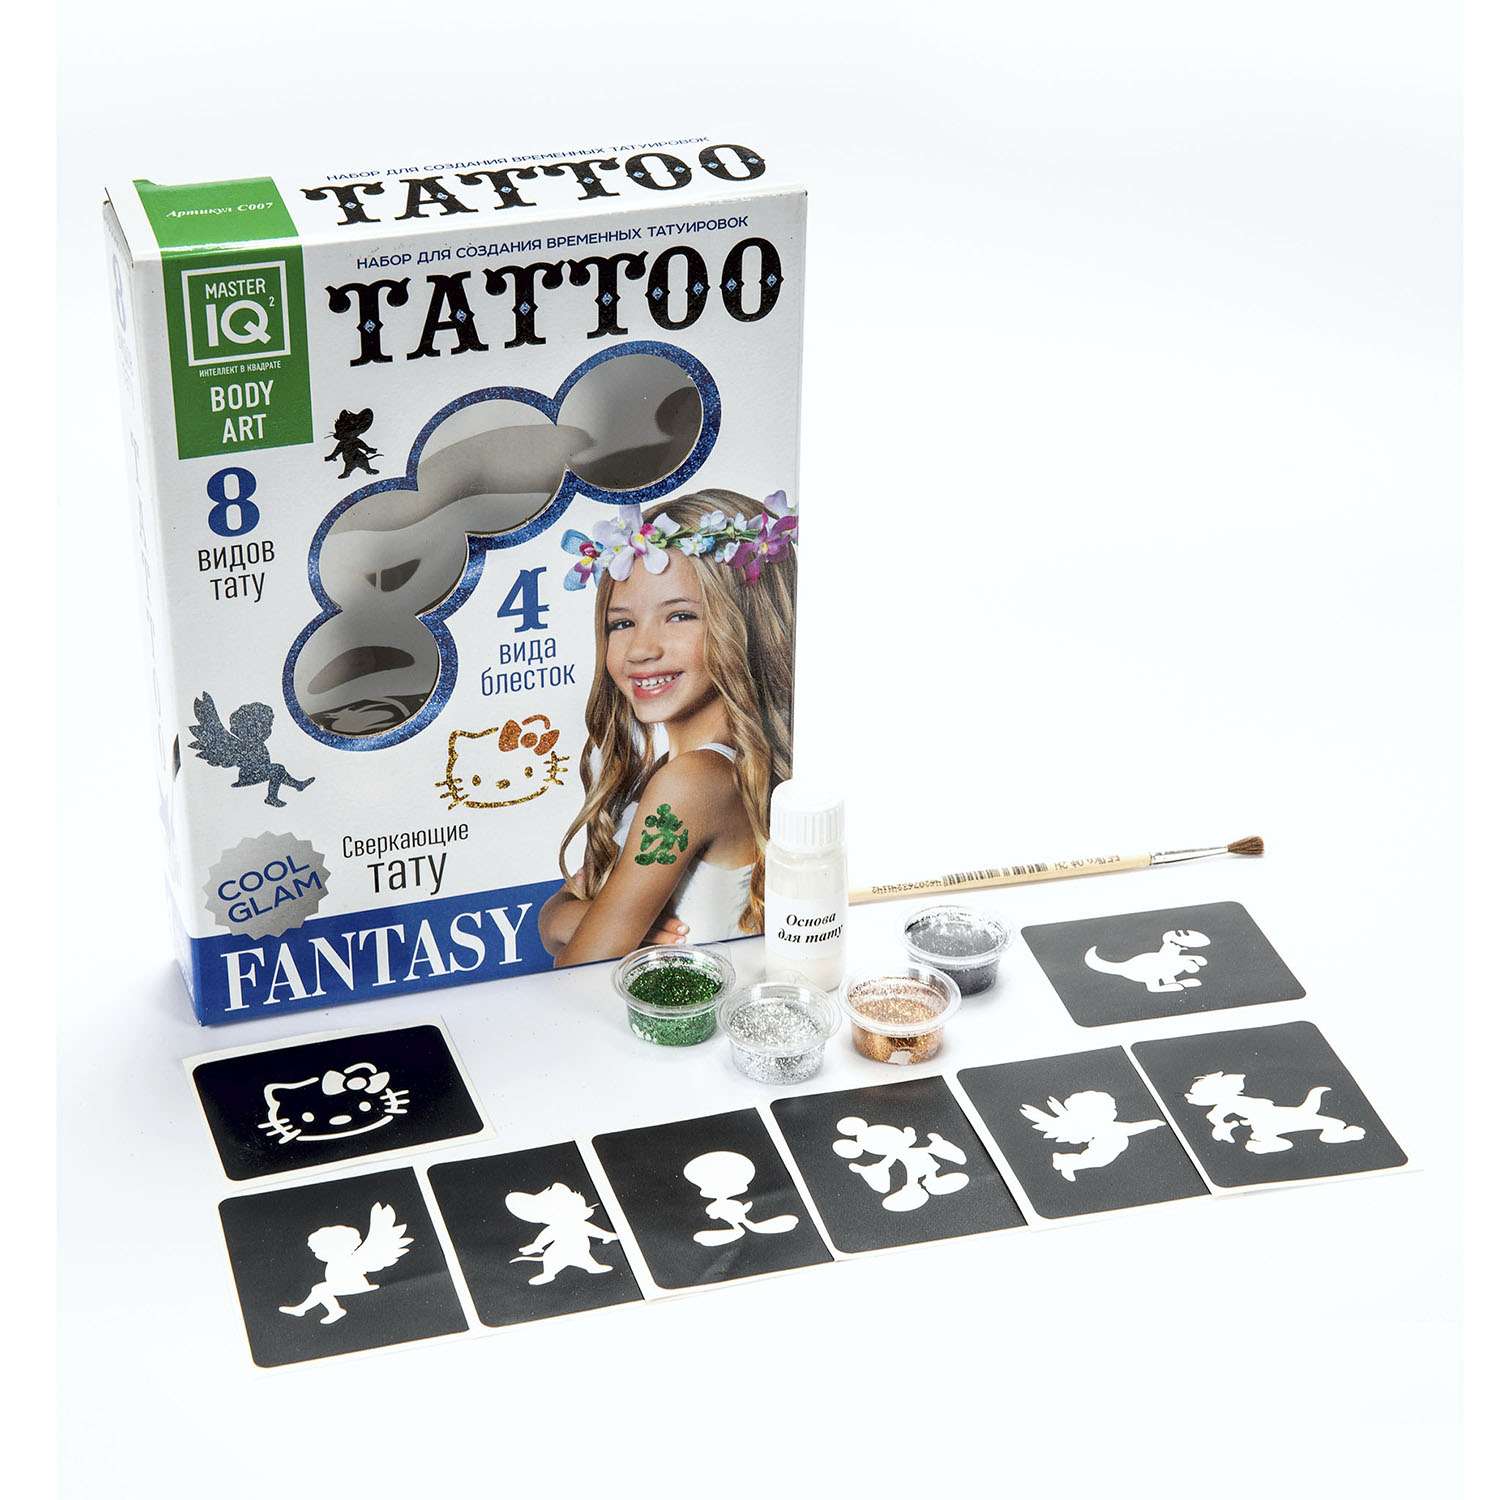 Набор Master IQ Для создания временных татуировок Тату Fantasy - фото 2